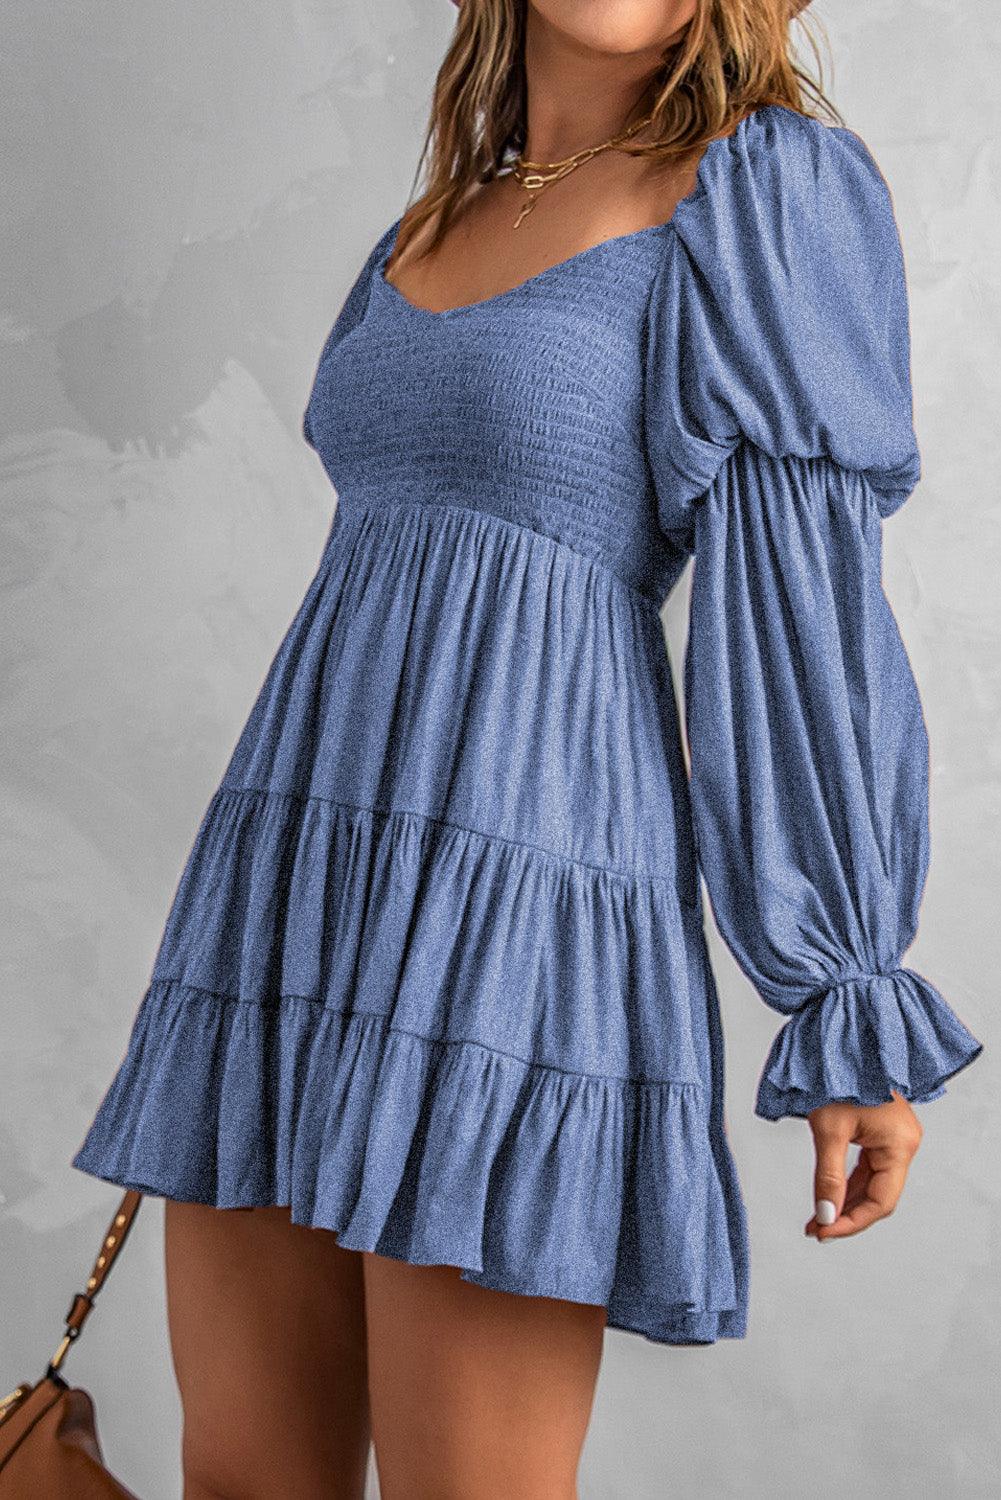 Smocked Off-Shoulder Tiered Mini Dress - LaLa D&C